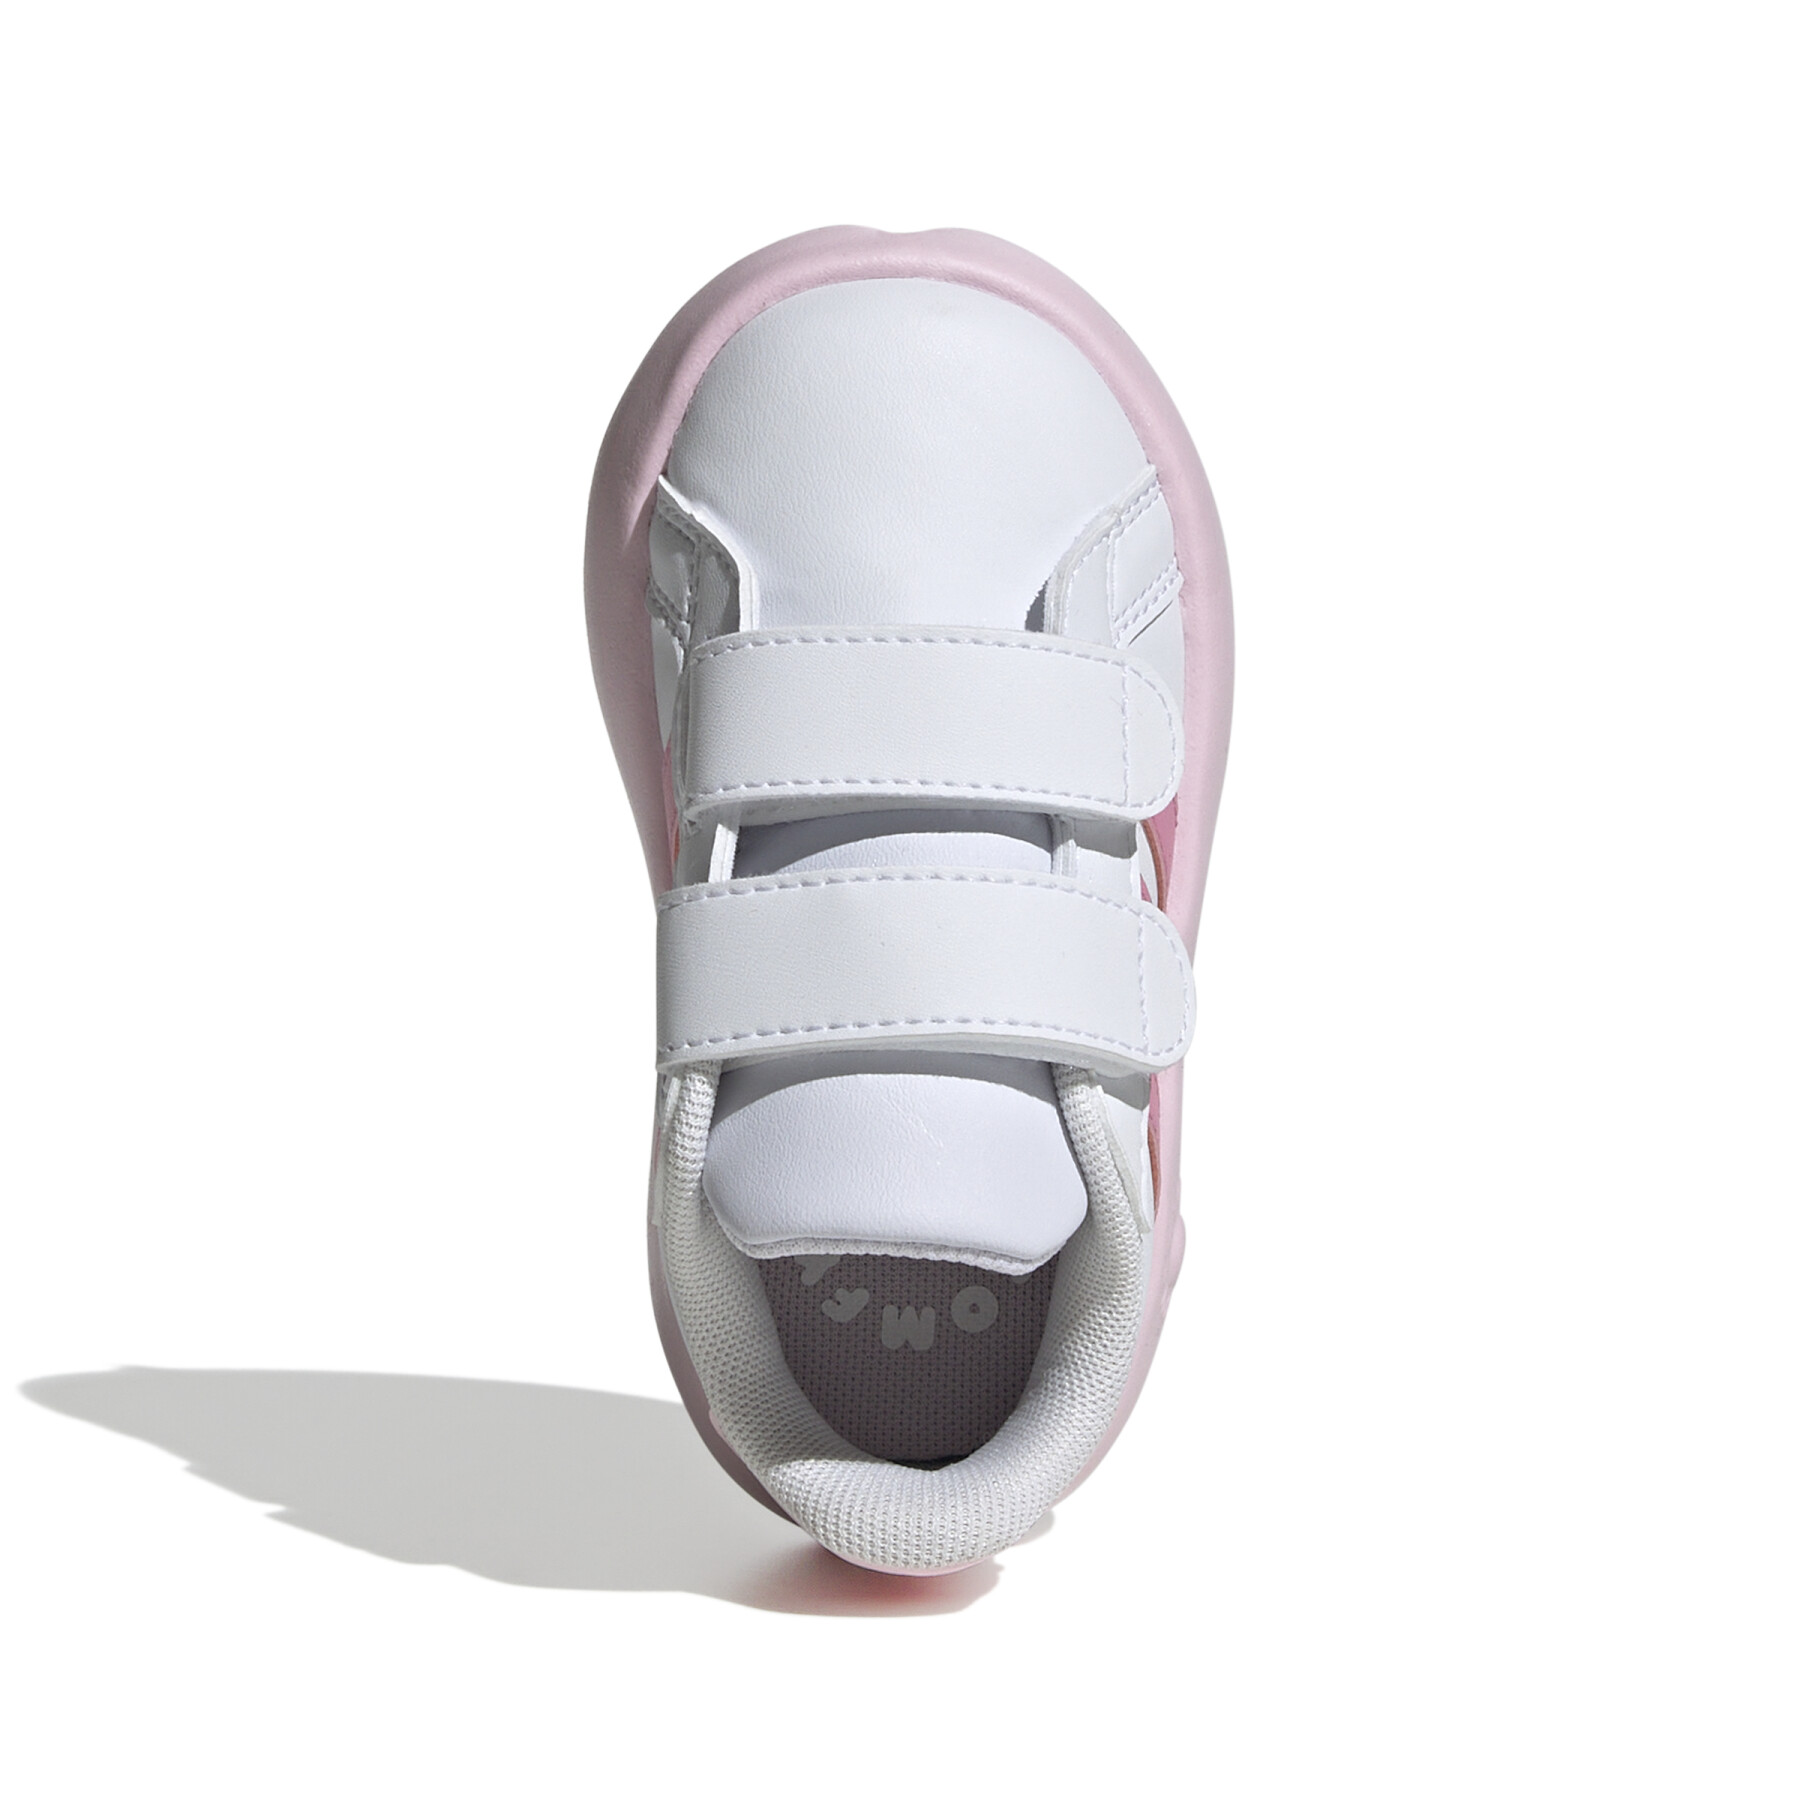 Zapatillas para bebés adidas Grand Court 2.0